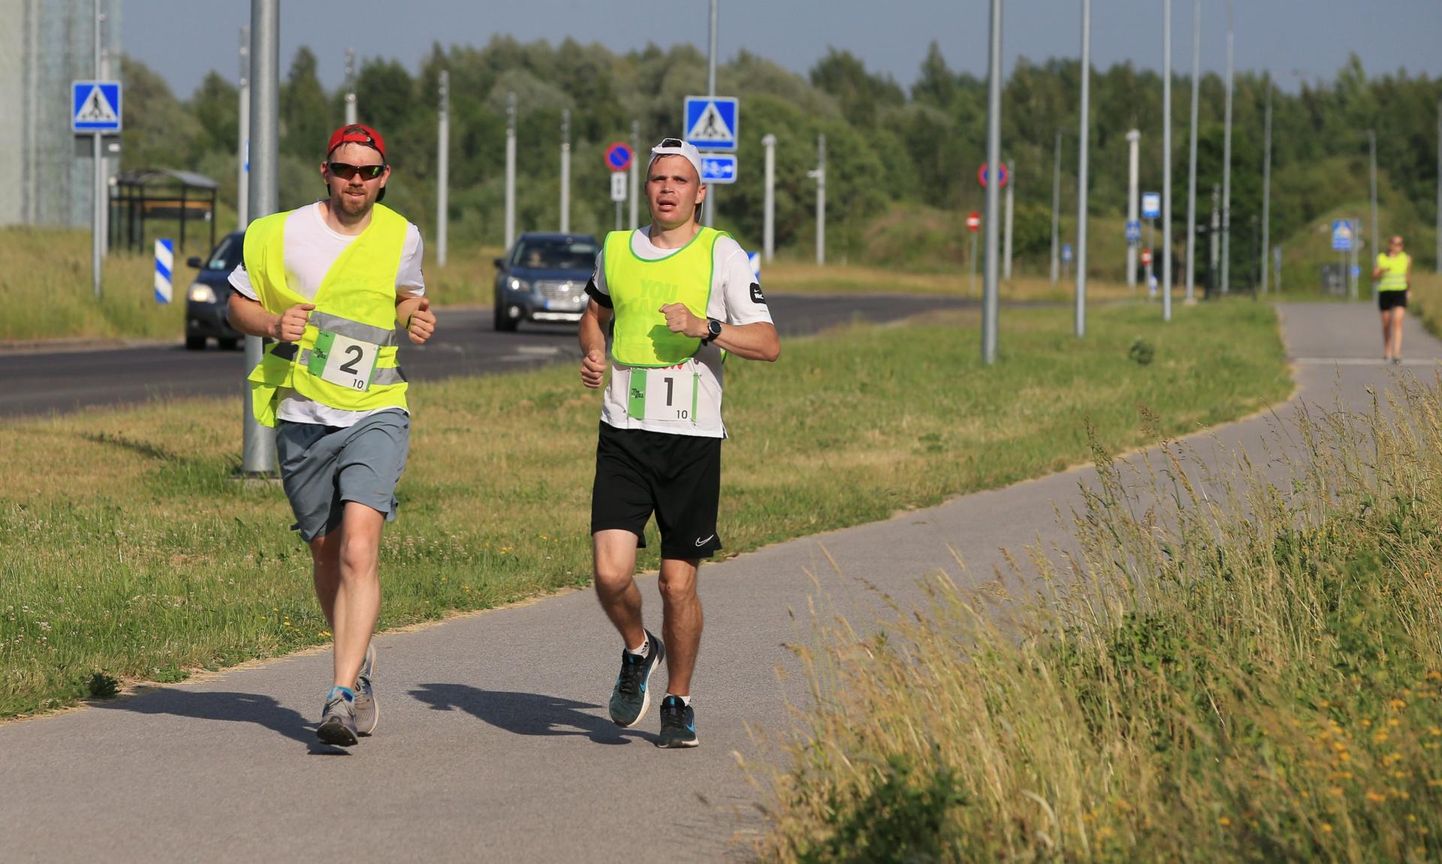 Munamäelt alustanud jooksjad läbisid distantsil Tartu ning lõpetasid Tallinnas Pirita velodroomil. Pildil on võistkondade Särasilmad 1 ja Särasilmad 2 esindajad.